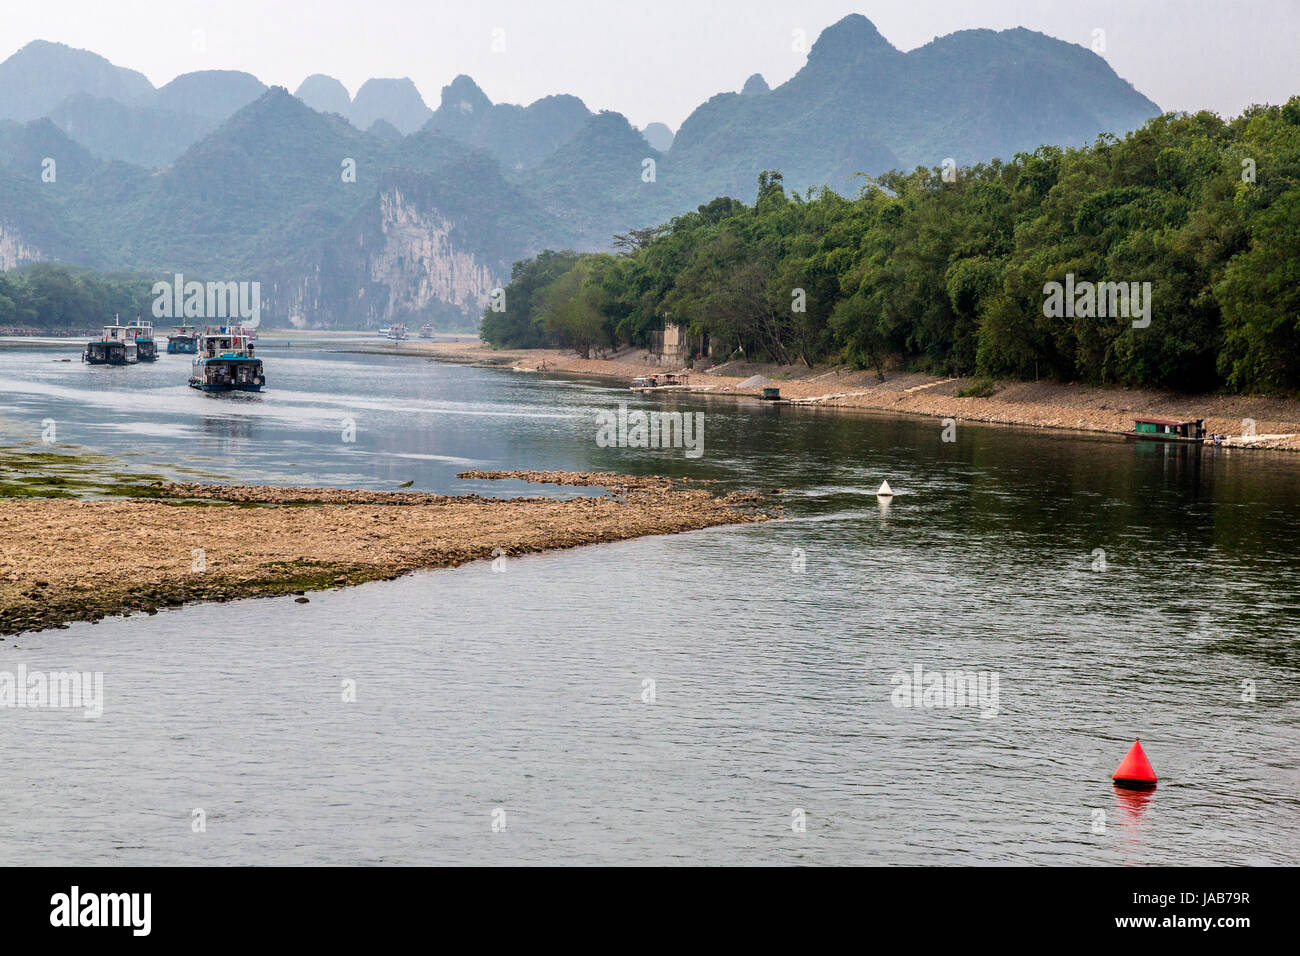 Croisière sur la rivière Li, région du Guangxi, Chine. Banque D'Images